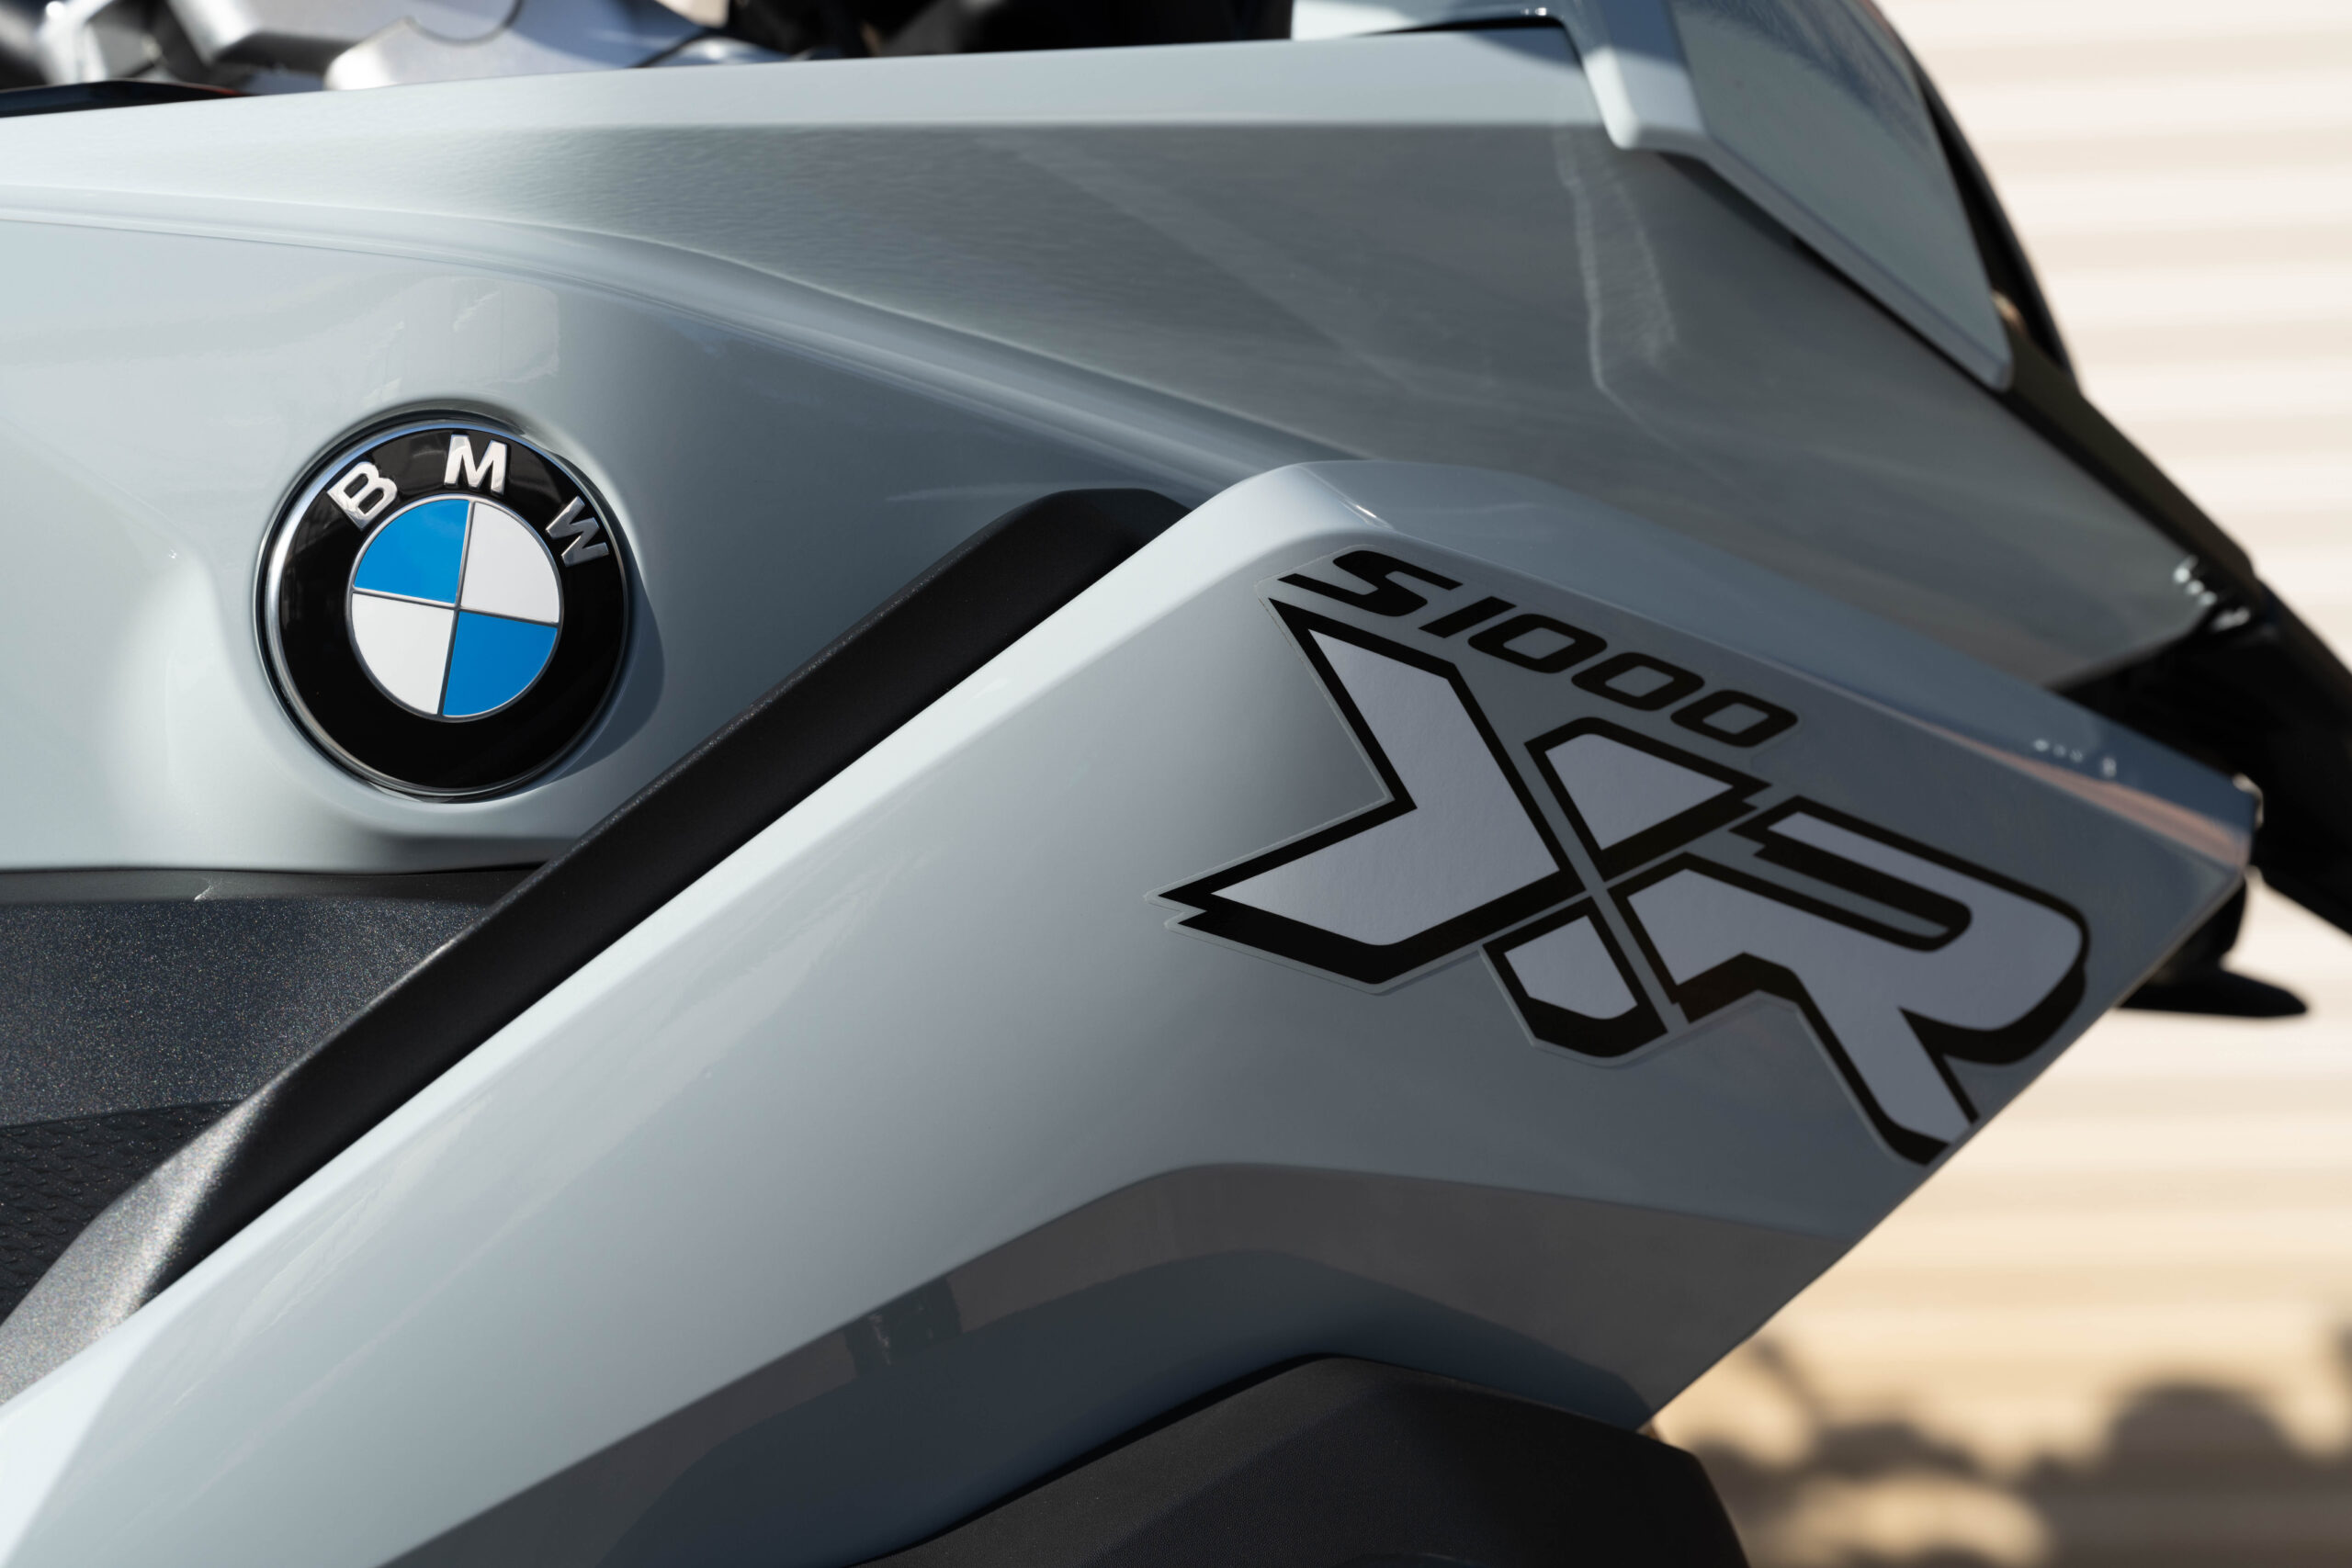 BMWの【S1000XR】をシート高40mmローダウン - セイクレッドグランド 